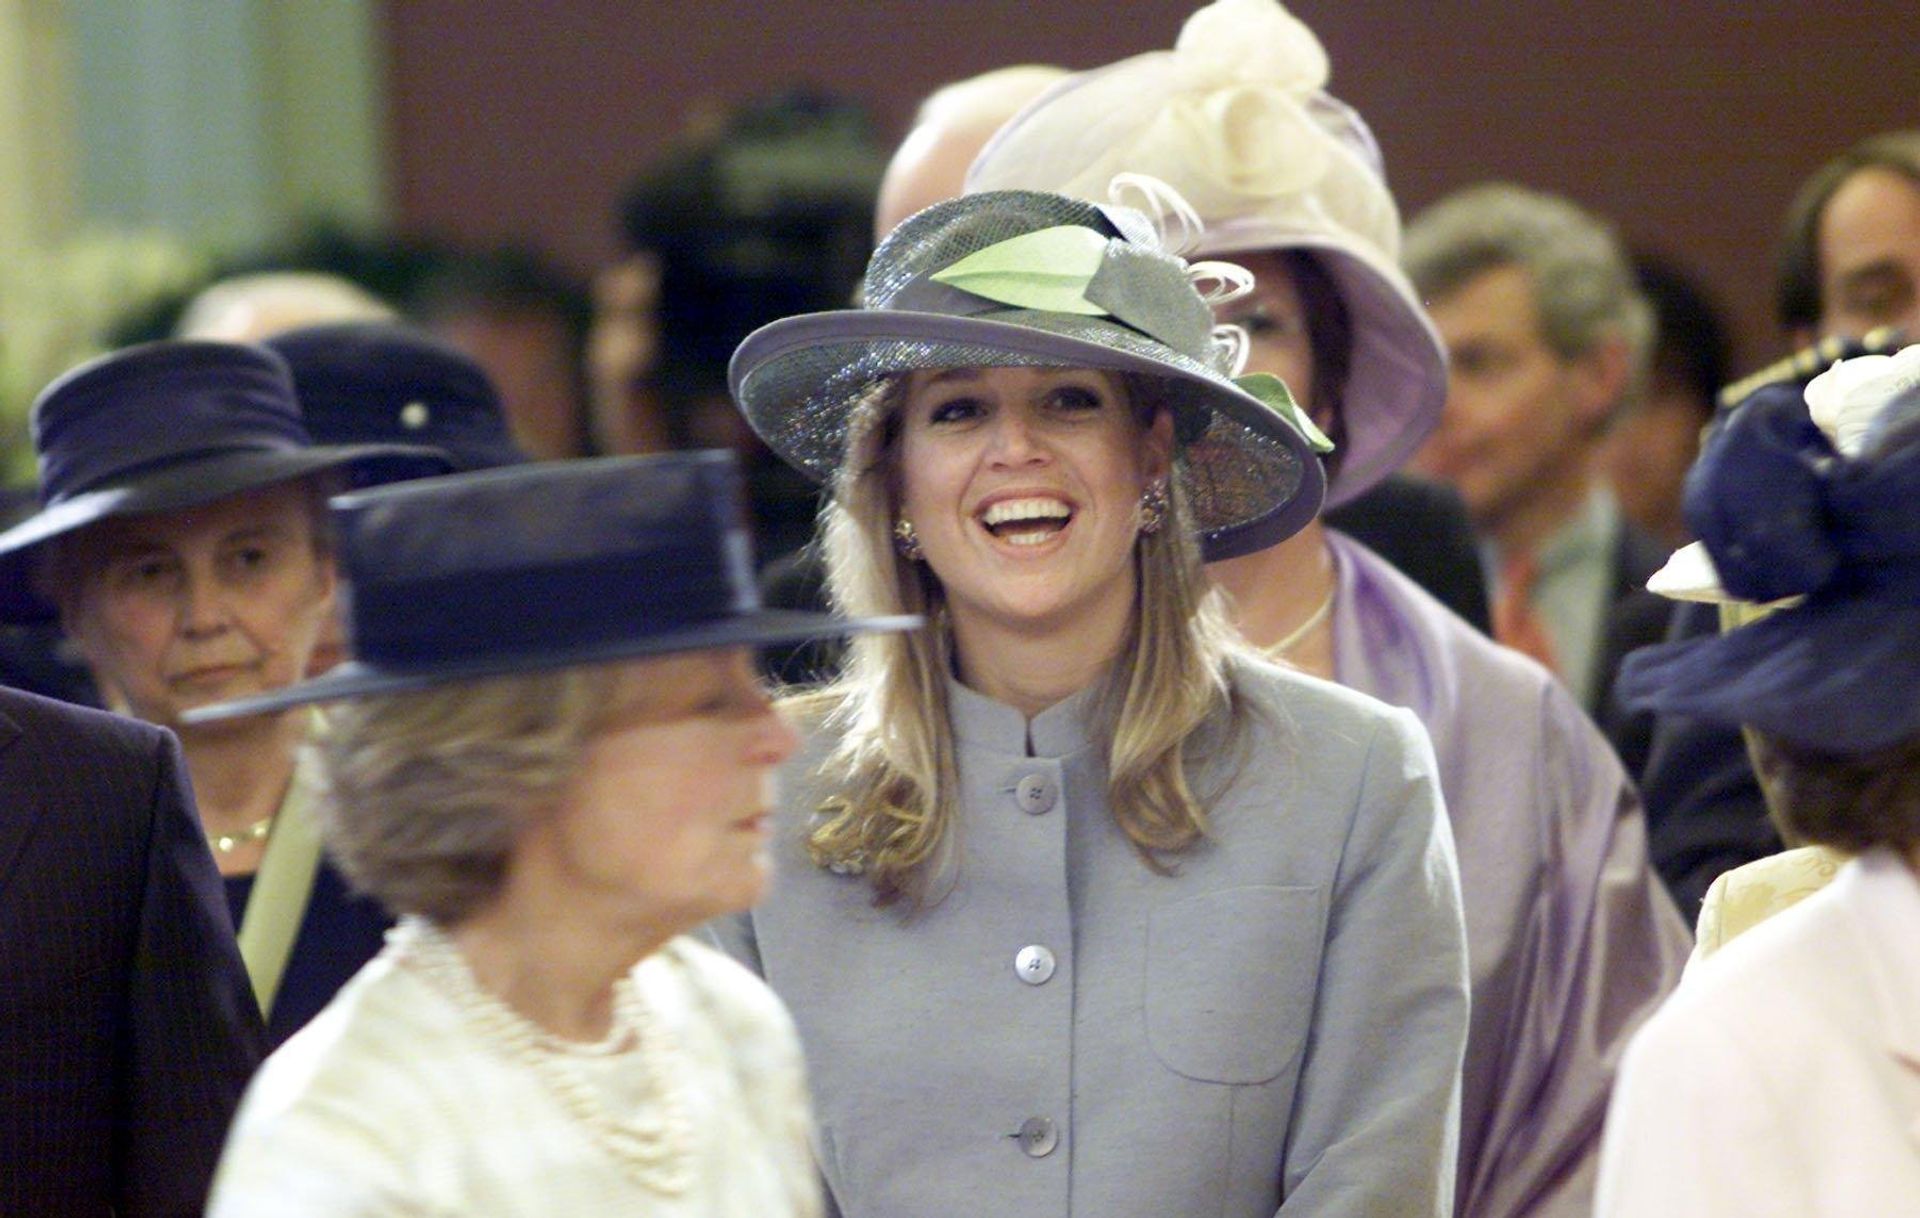 2001 - Máxima vermaakt zich opperbest tijdens het huwelijk van prins Constantijn en Laurentien